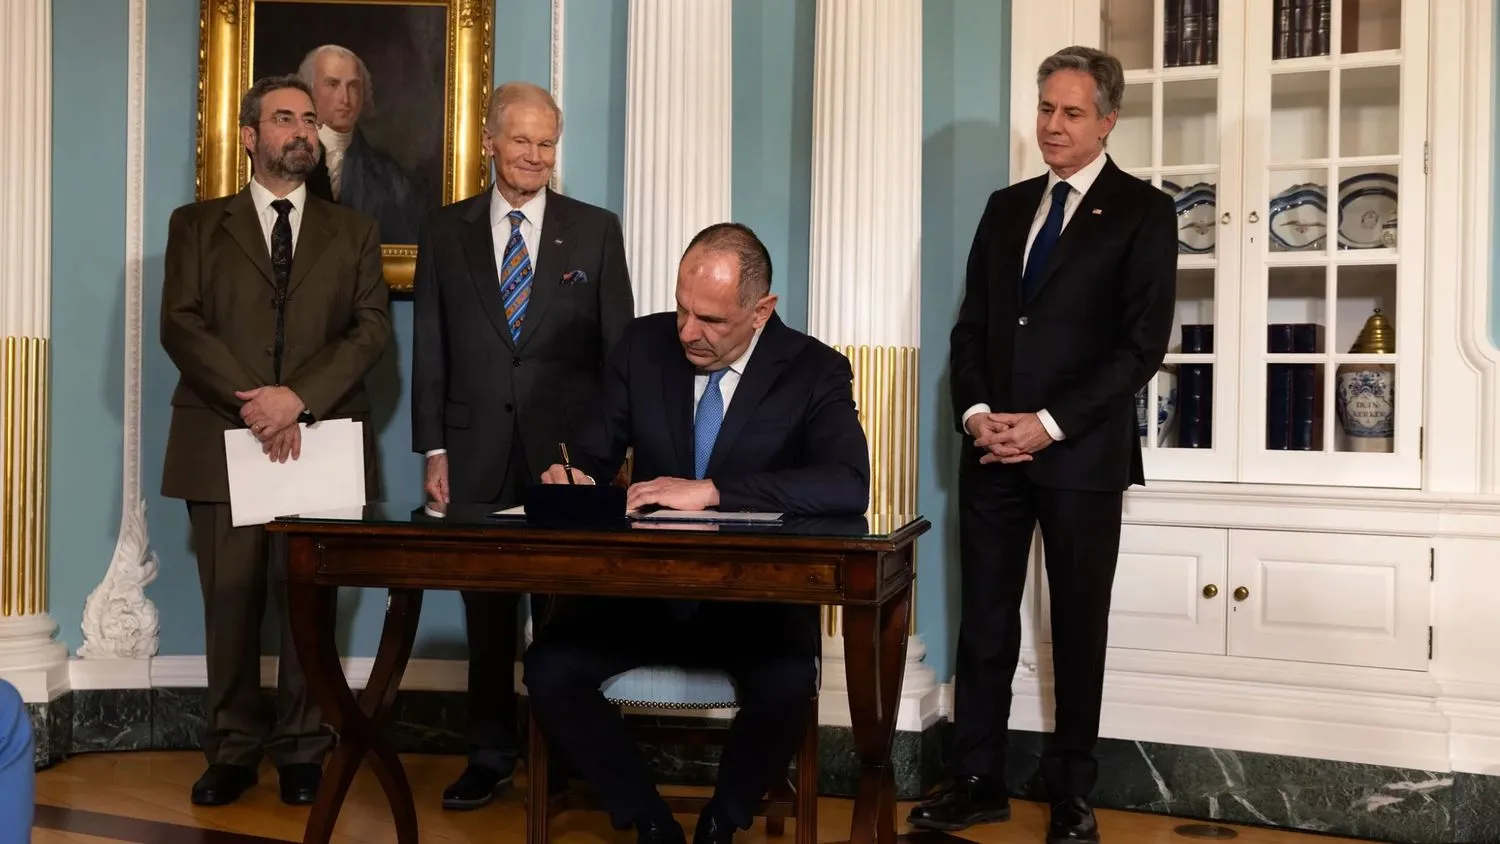 Drei lächelnde Männer in Anzügen stehen hinter einem Mann, der an einem kleinen Holztisch sitzt und ein Dokument unterschreibt.